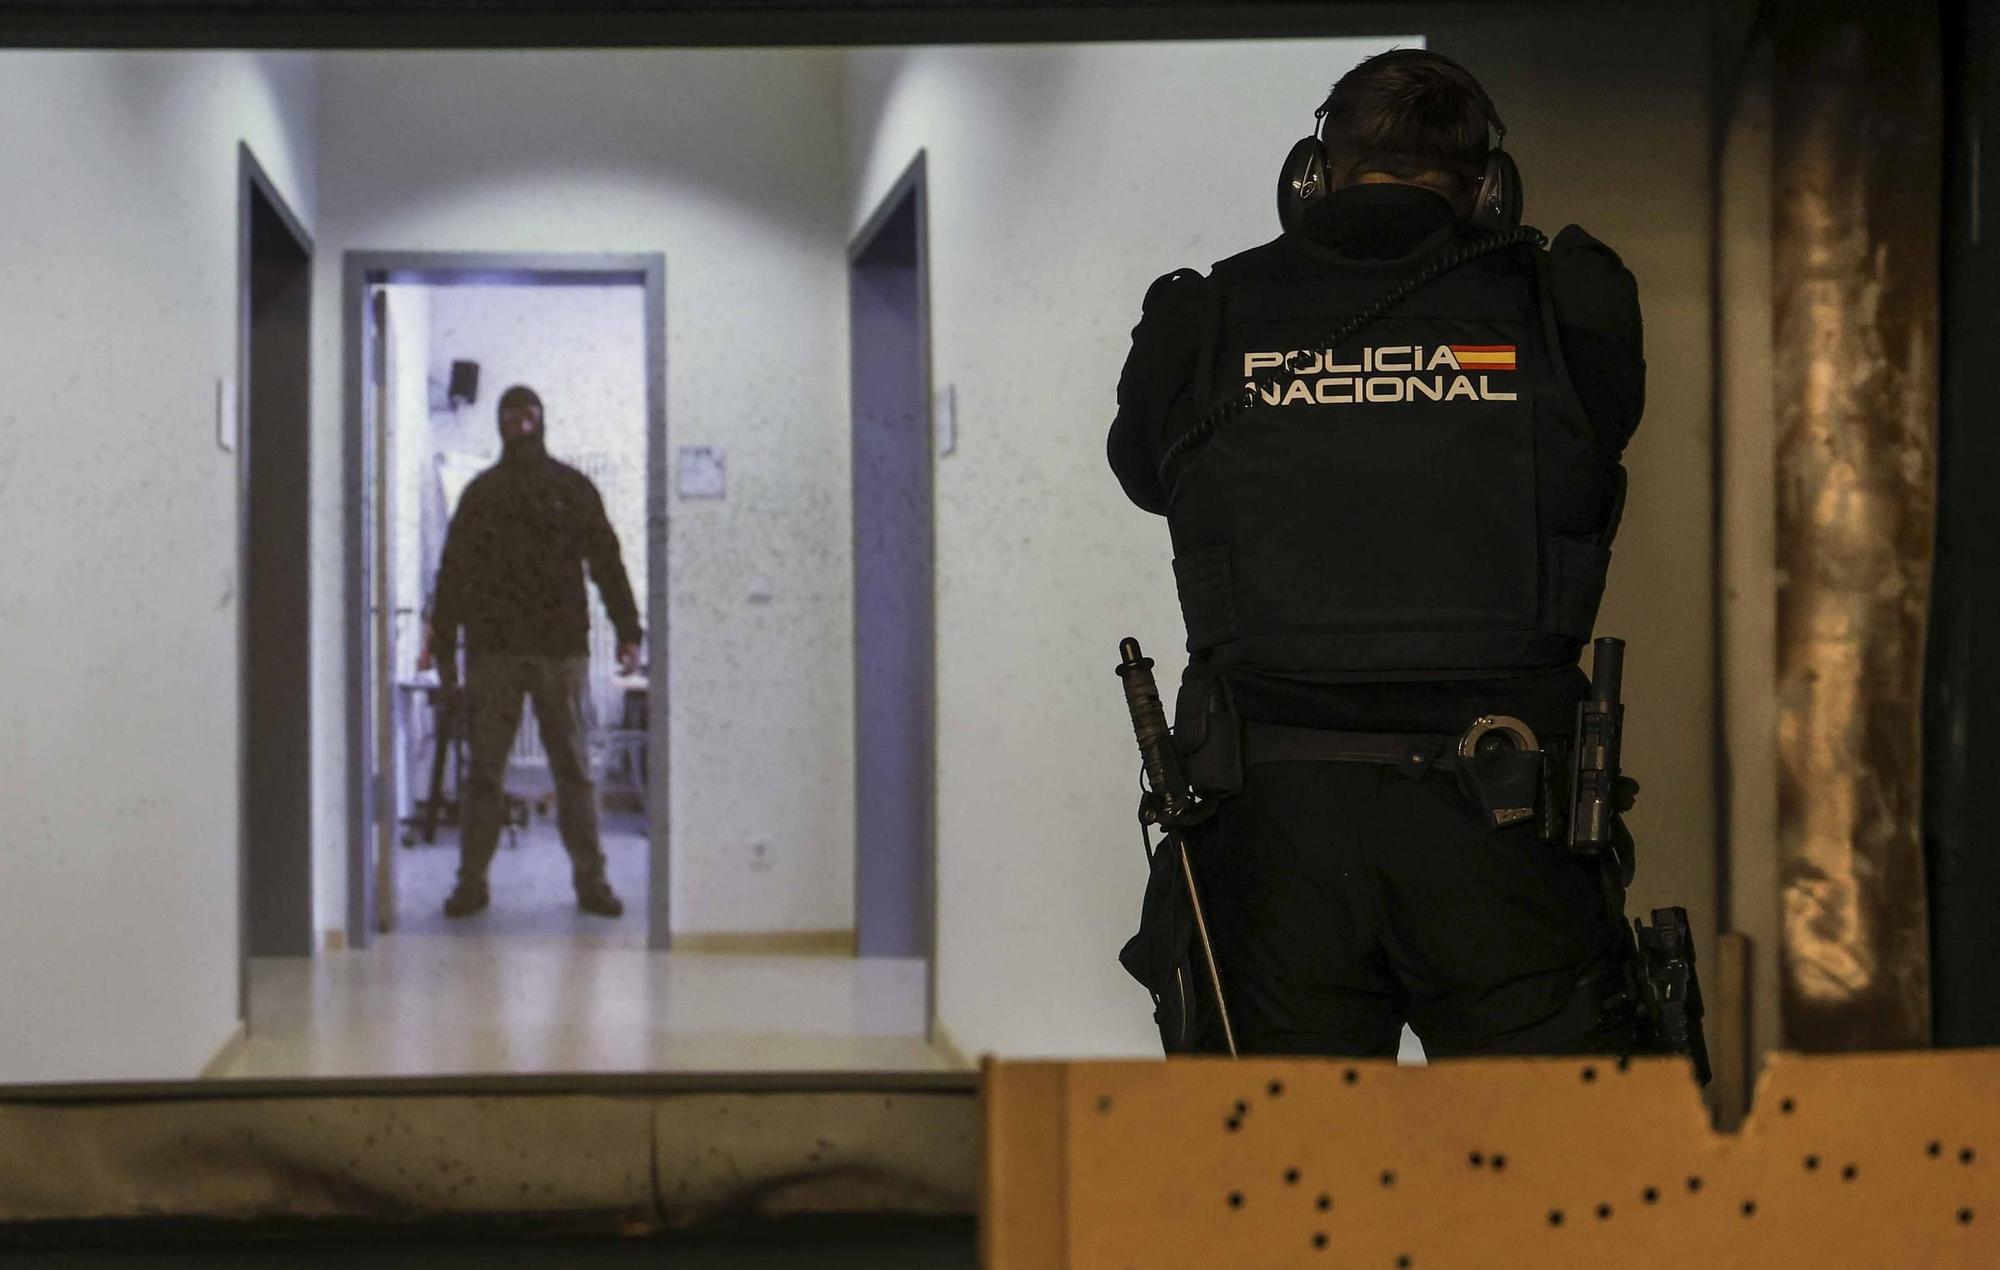 Nueva galería de tiro con munición real para la Policía Nacional de Alicante